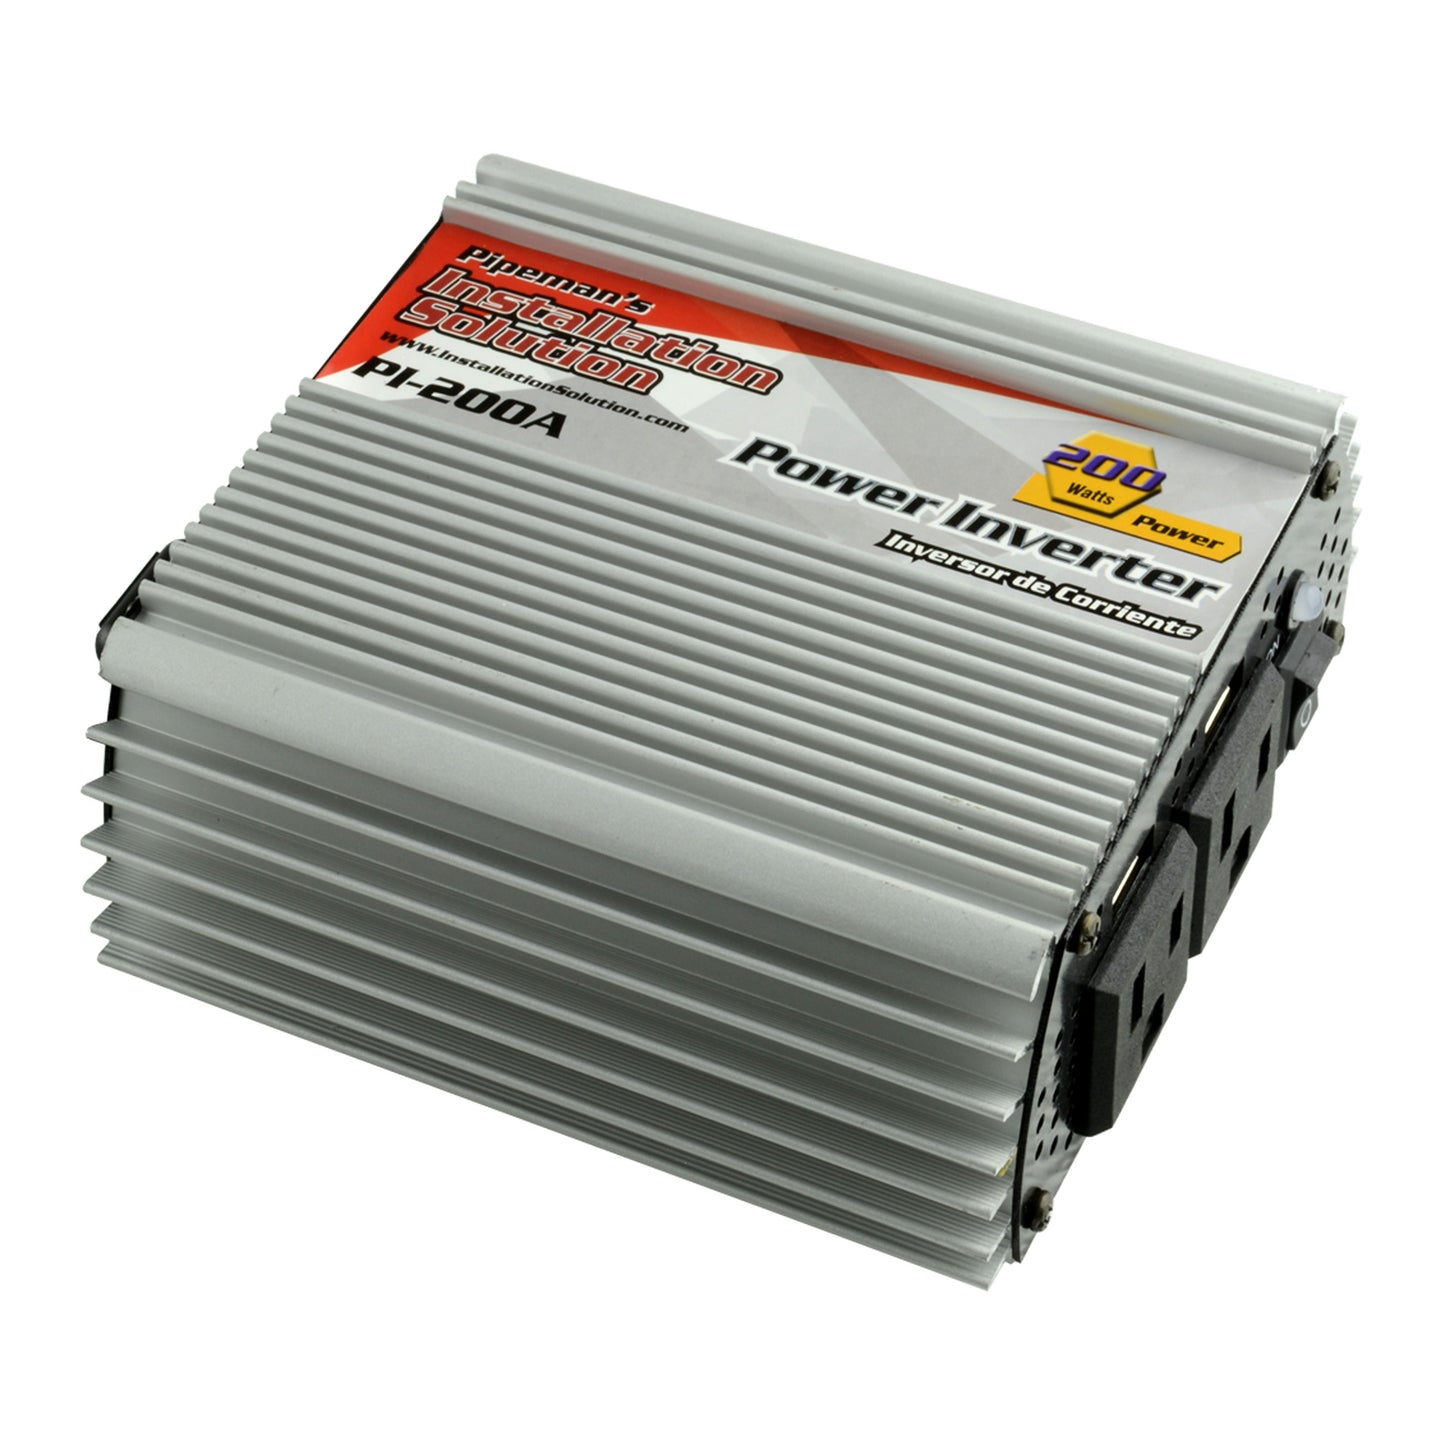 PI-200A - 200 Watts 12V DC to 110V AC Power Inverter